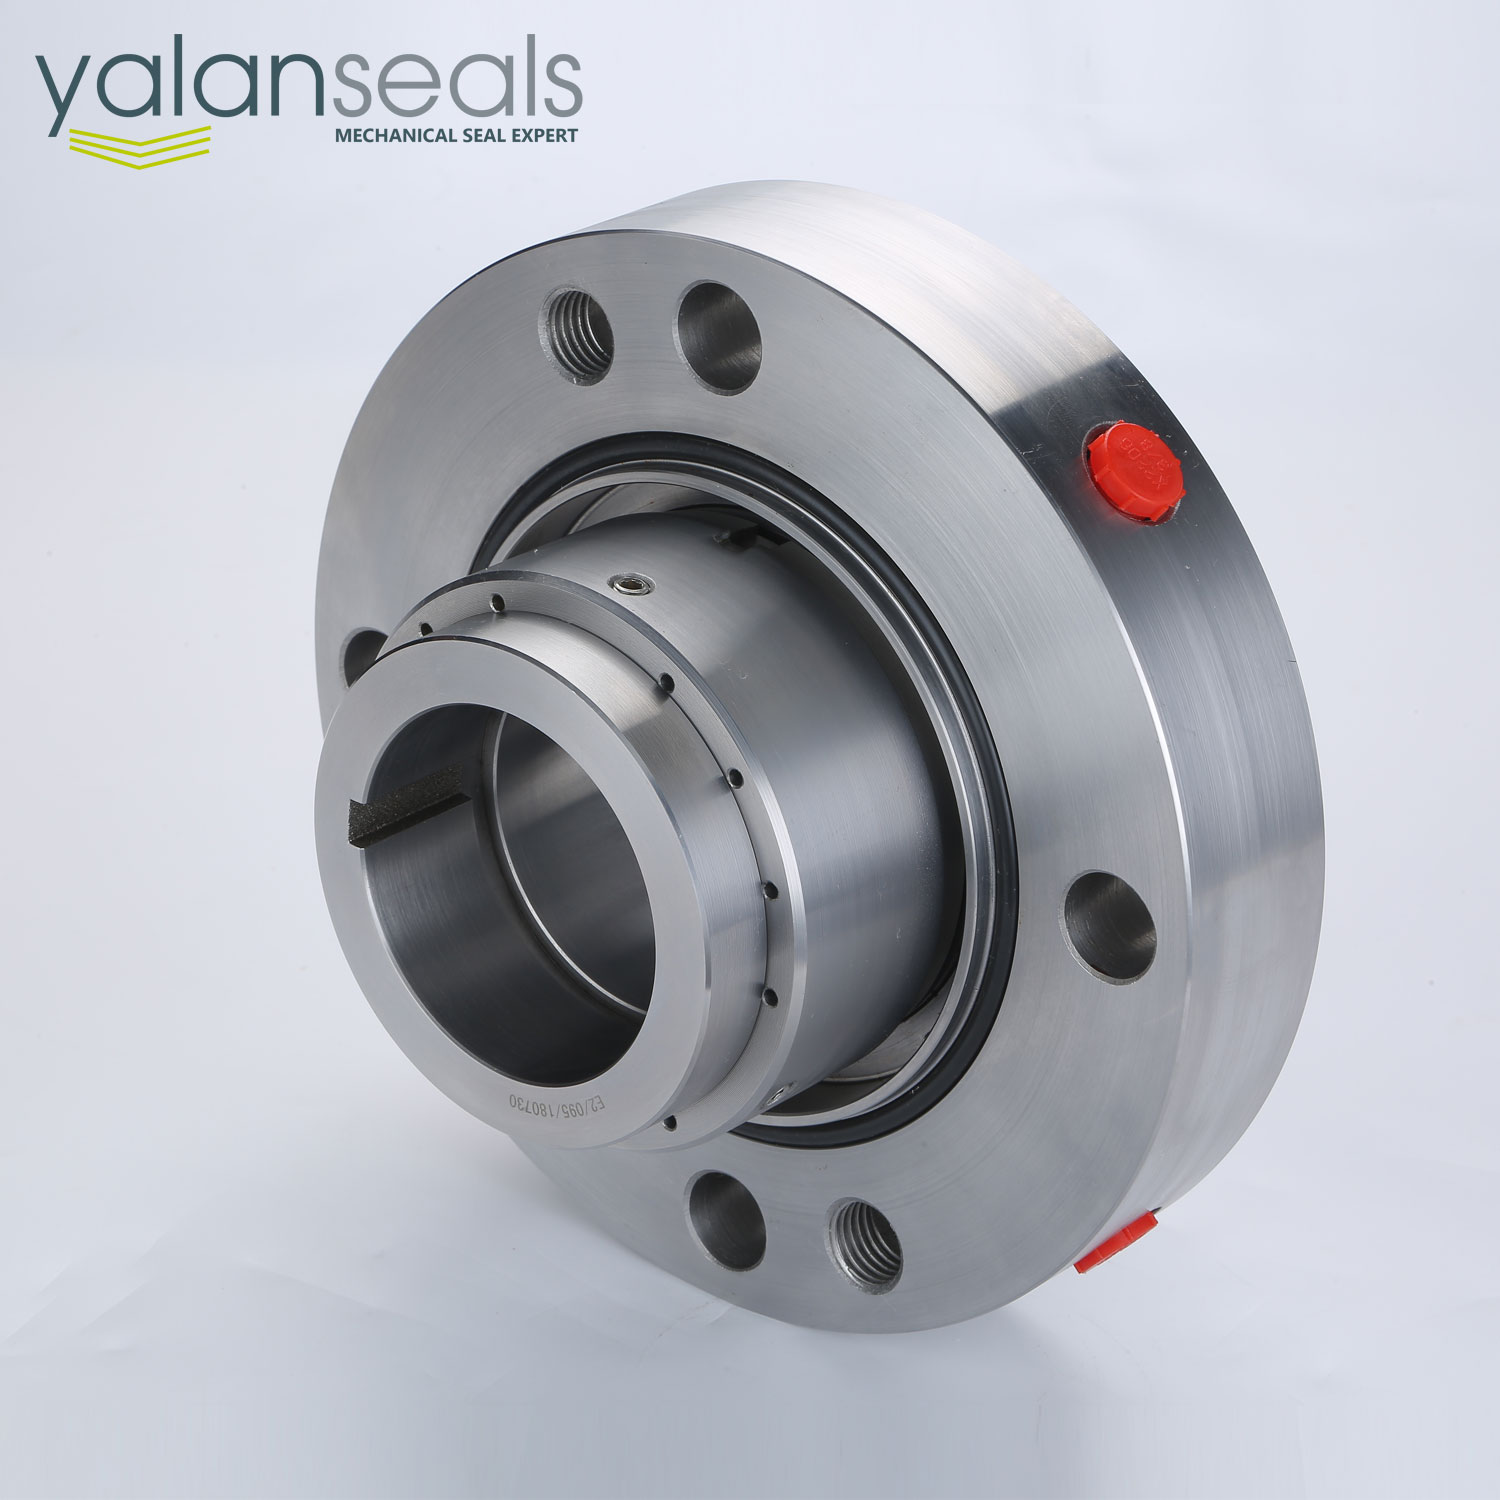 YALAN 1D56-H75 Cartridge Seal for Boiler Feed Pumps